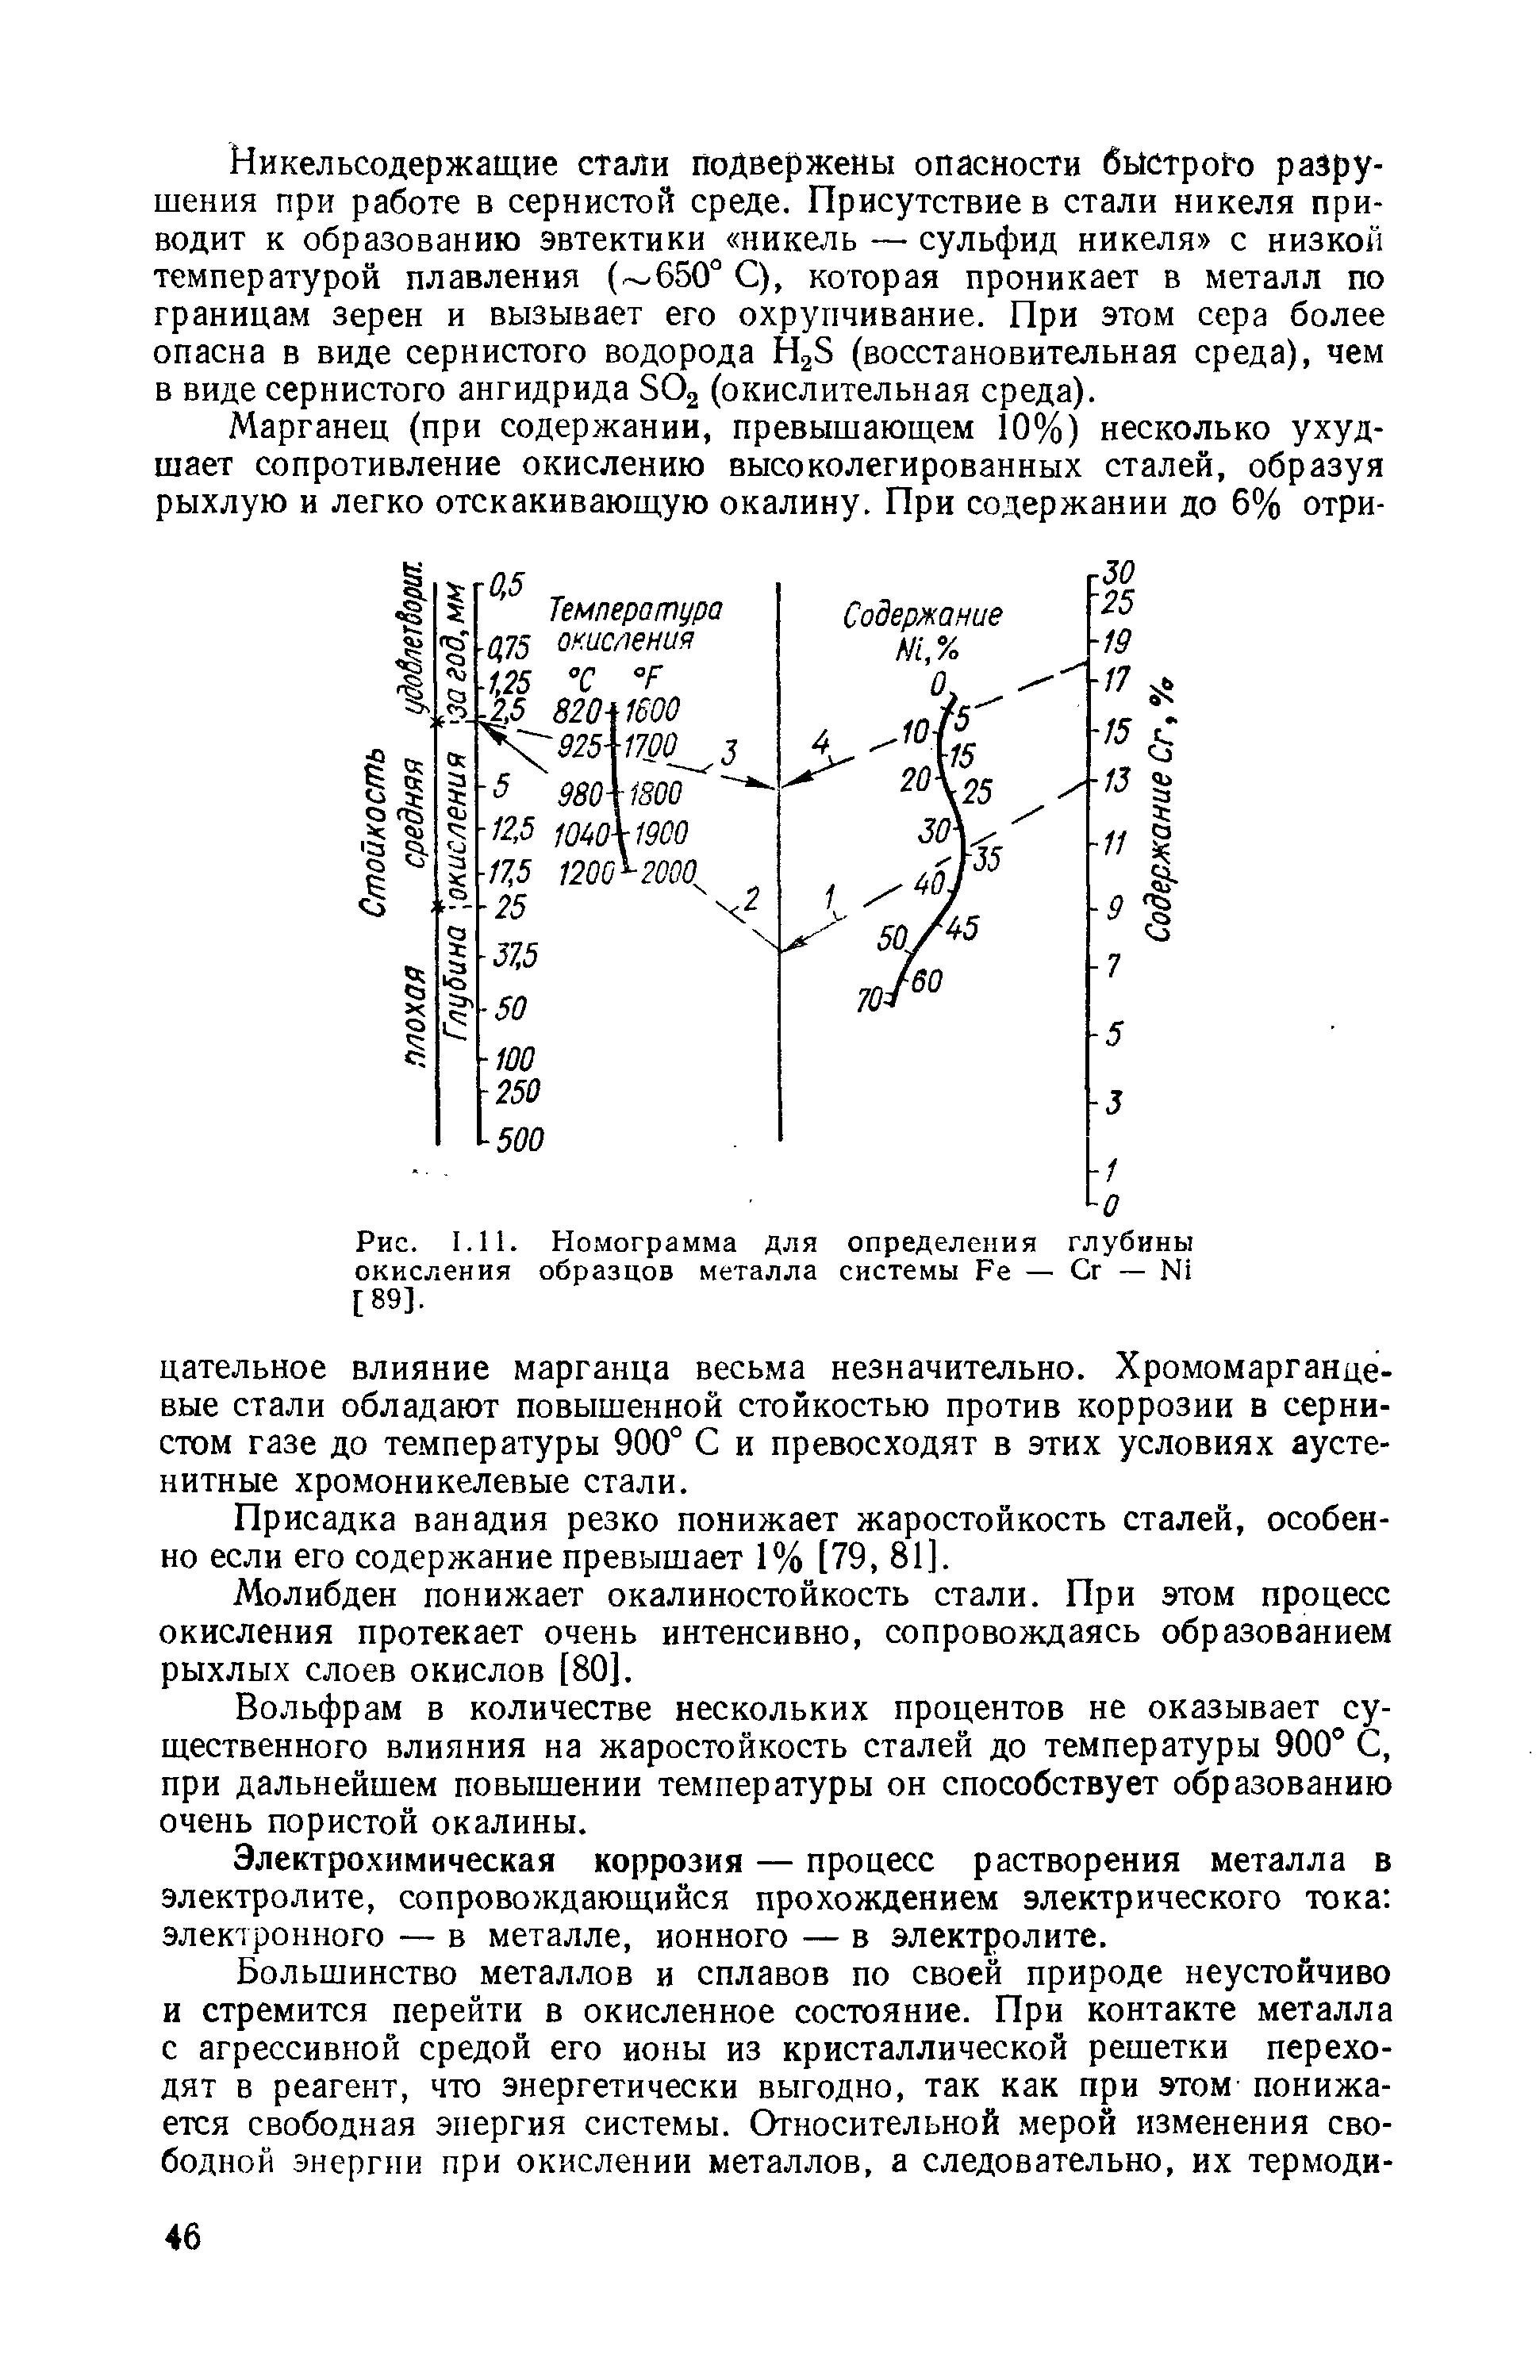 Рис. 1.11. Номограмма для определения глубины окисления образцов металла системы Ре — Сг — N1 [89].
